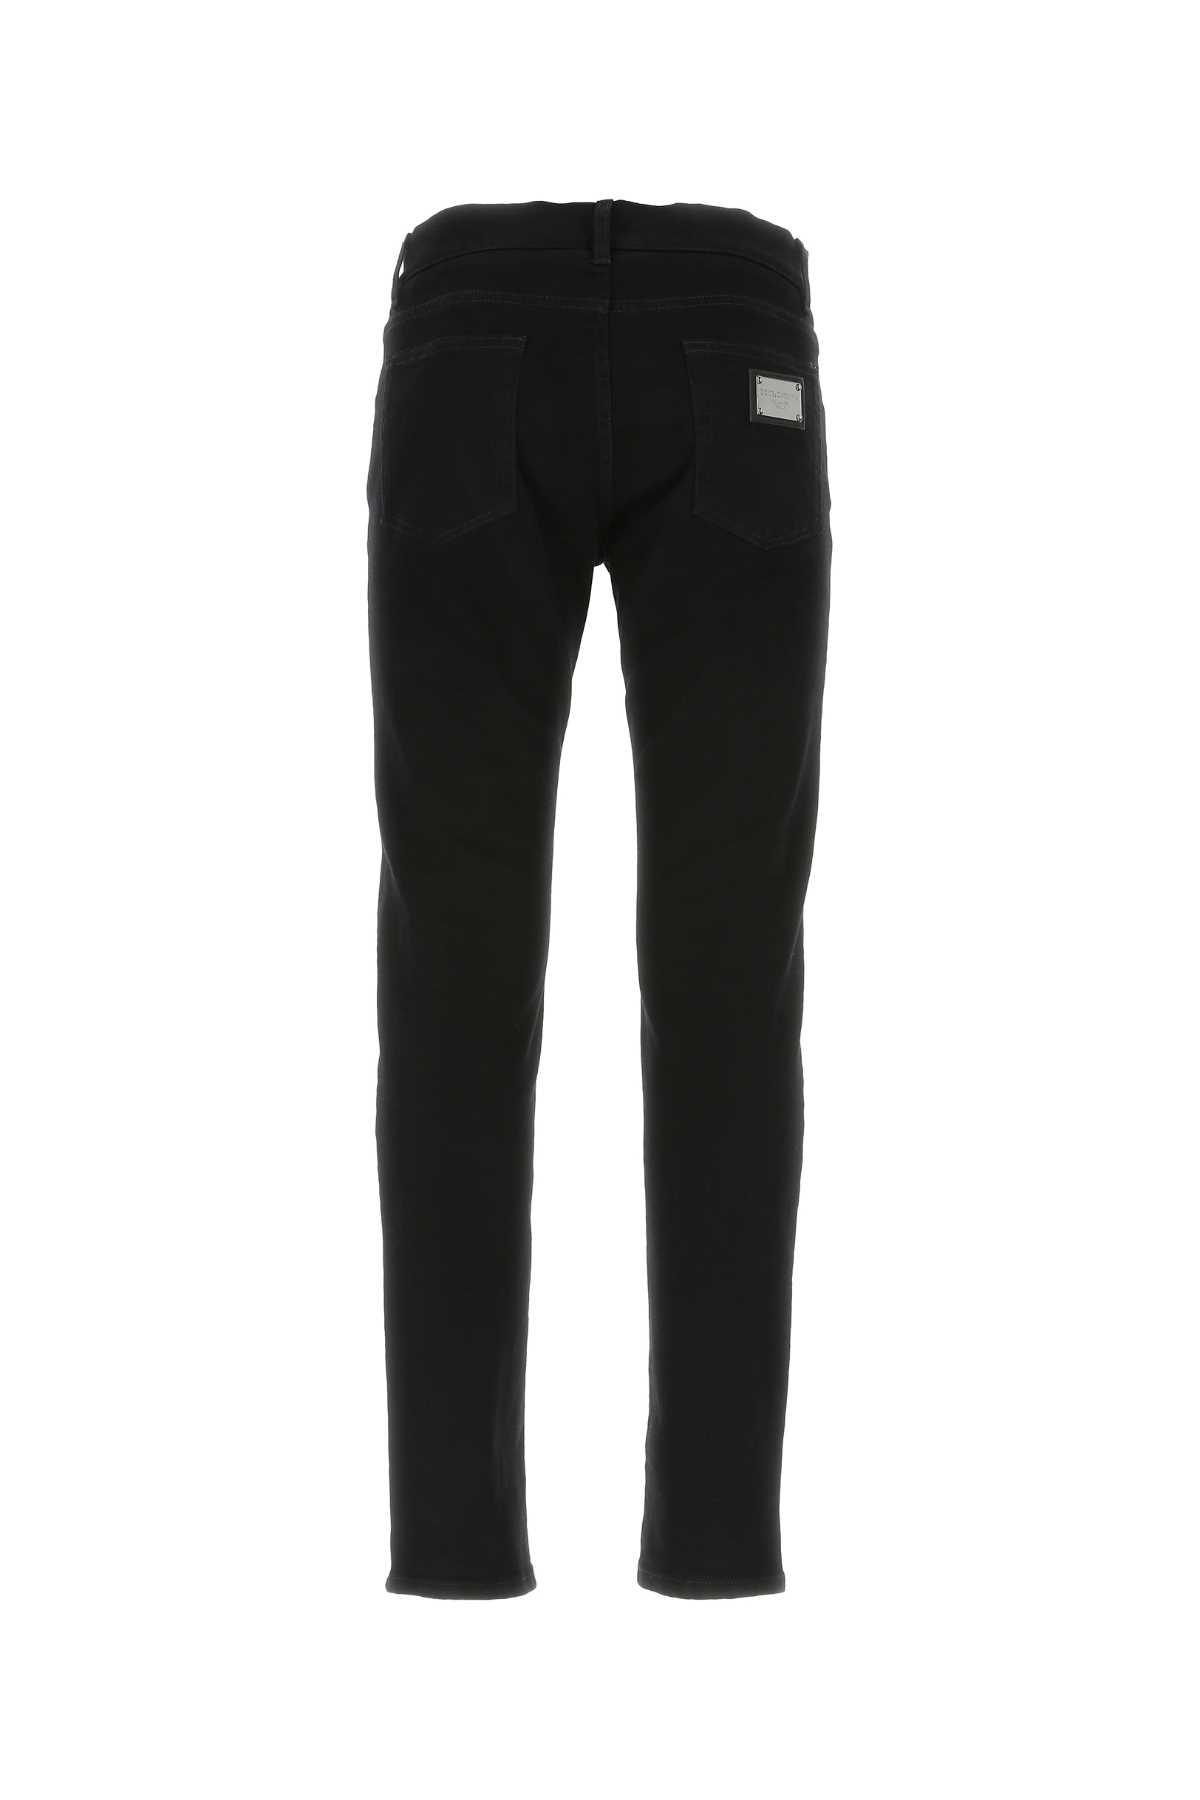 Shop Dolce & Gabbana Black Stretch Denim Jeans In S9001